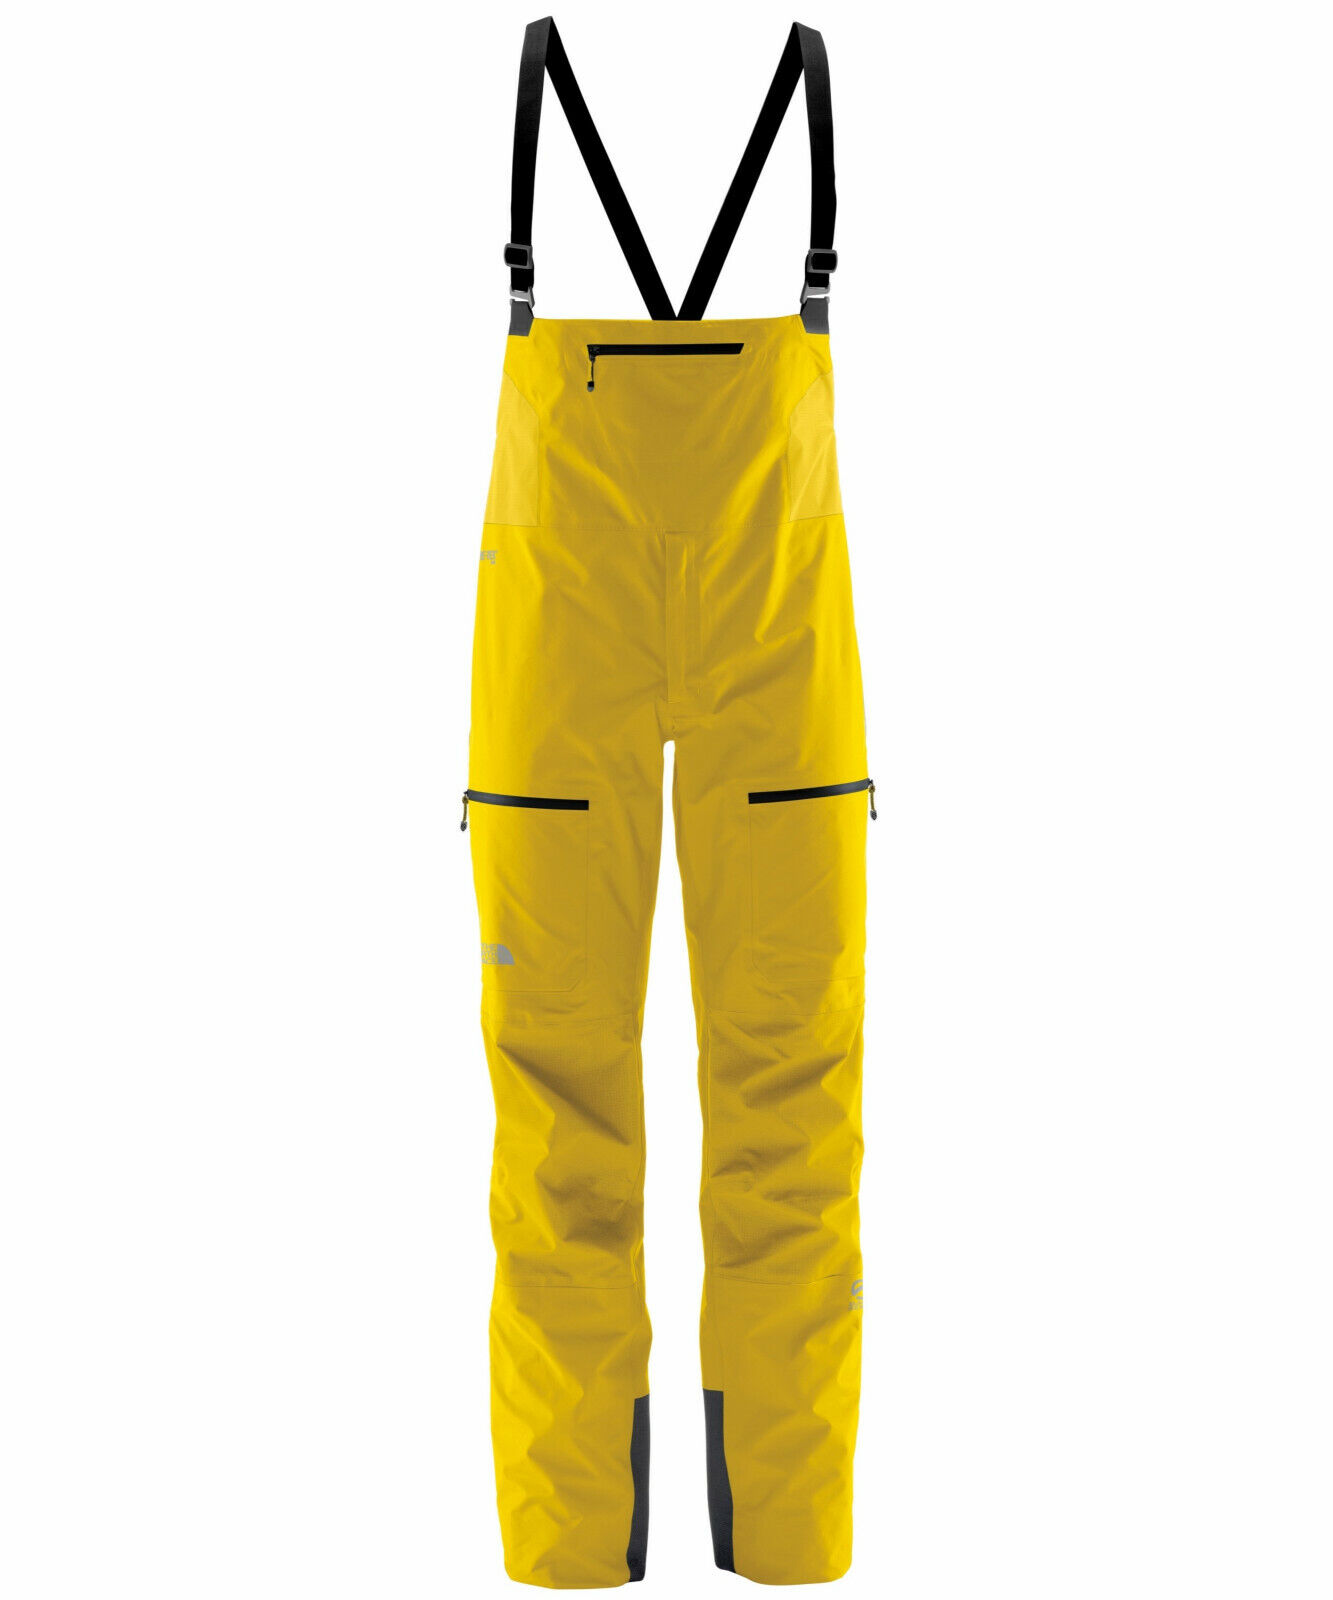 Men's The North Face Summit Series Yellow L5 Gore-Tex GTX Pro Bib Pants New  $550 | eBay